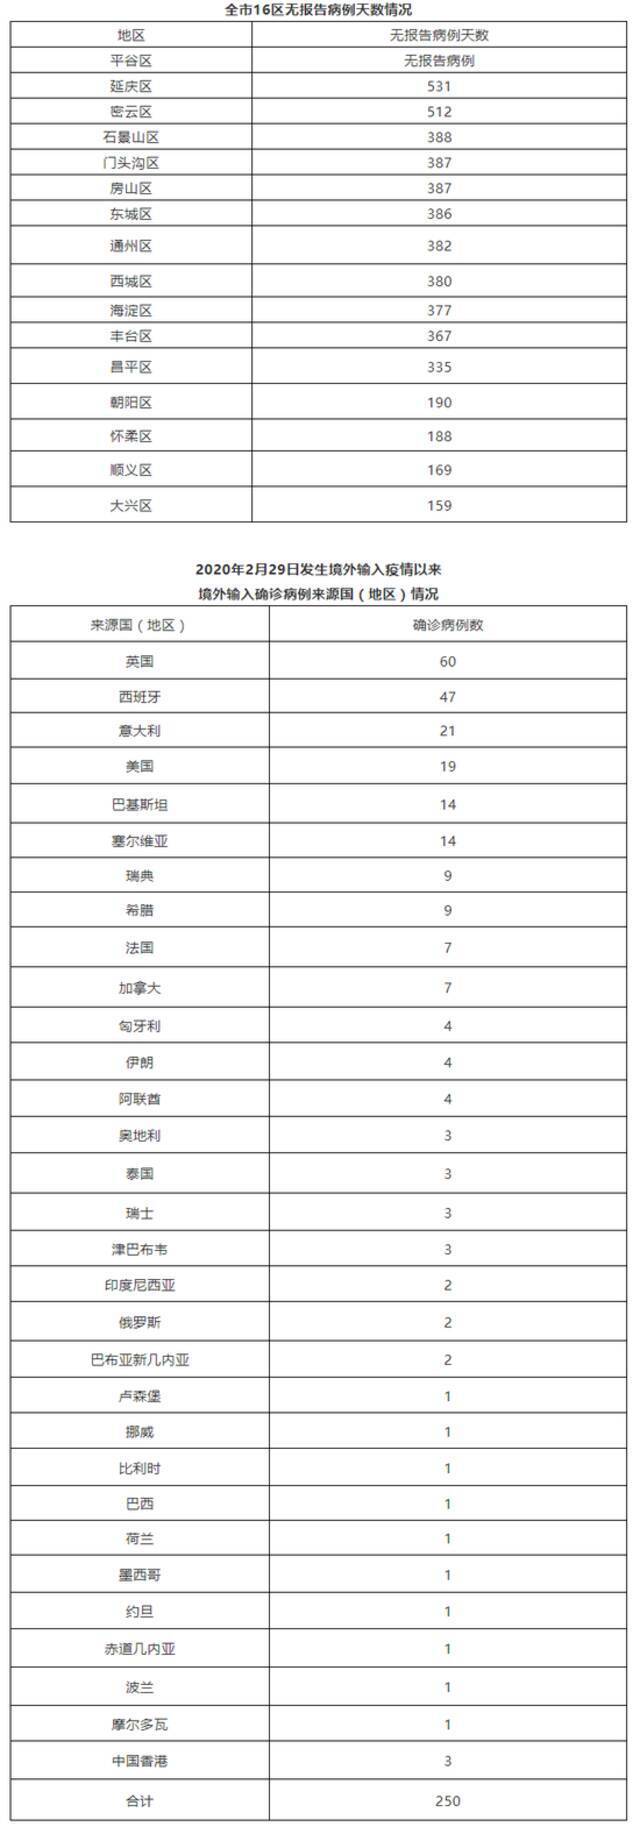 北京7月7日新增1例境外输入无症状感染者